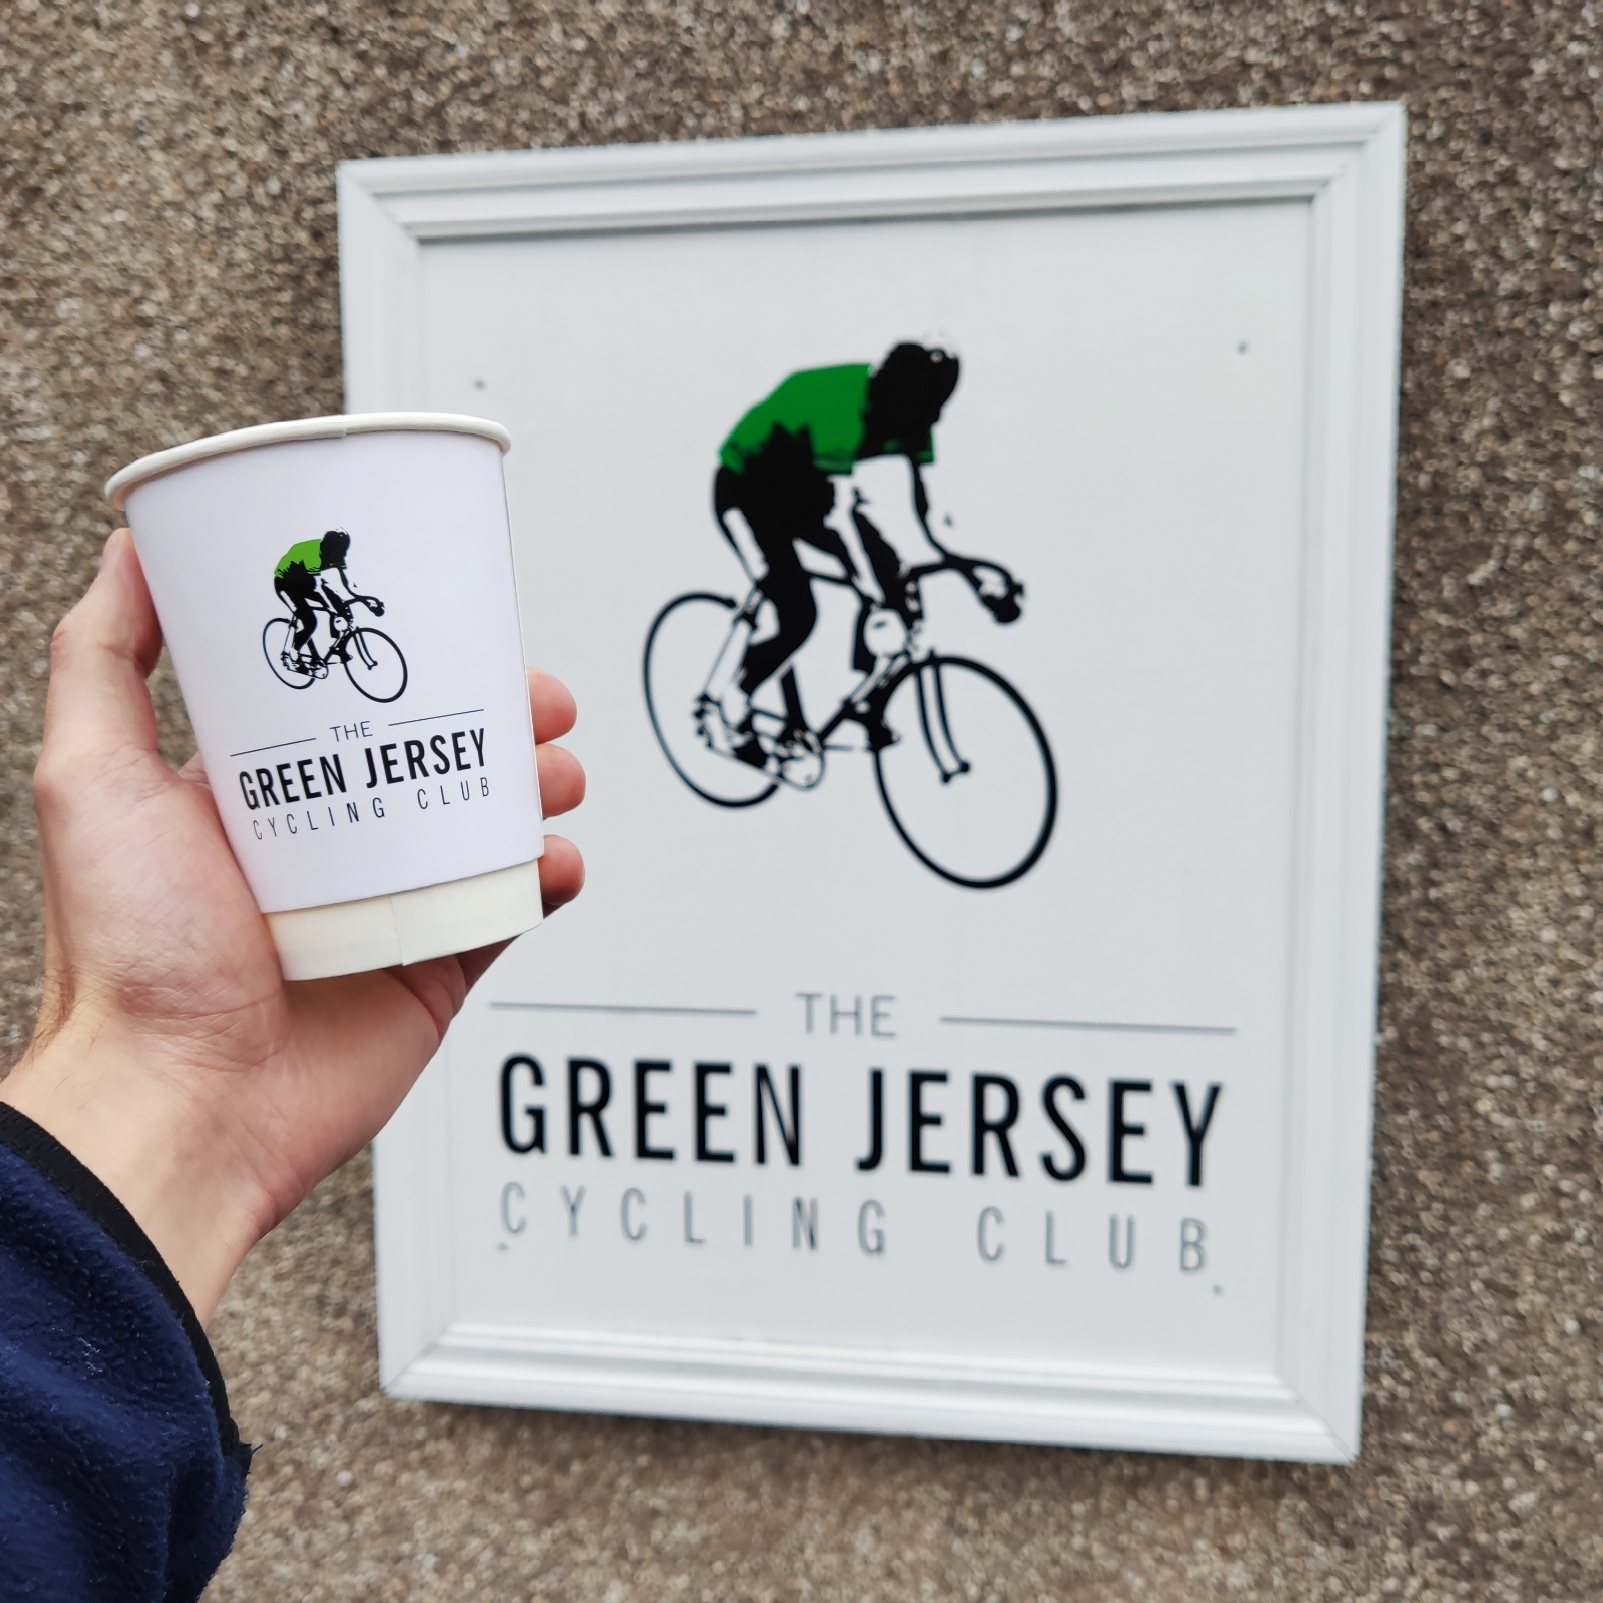 Green Jersey Bike Shop